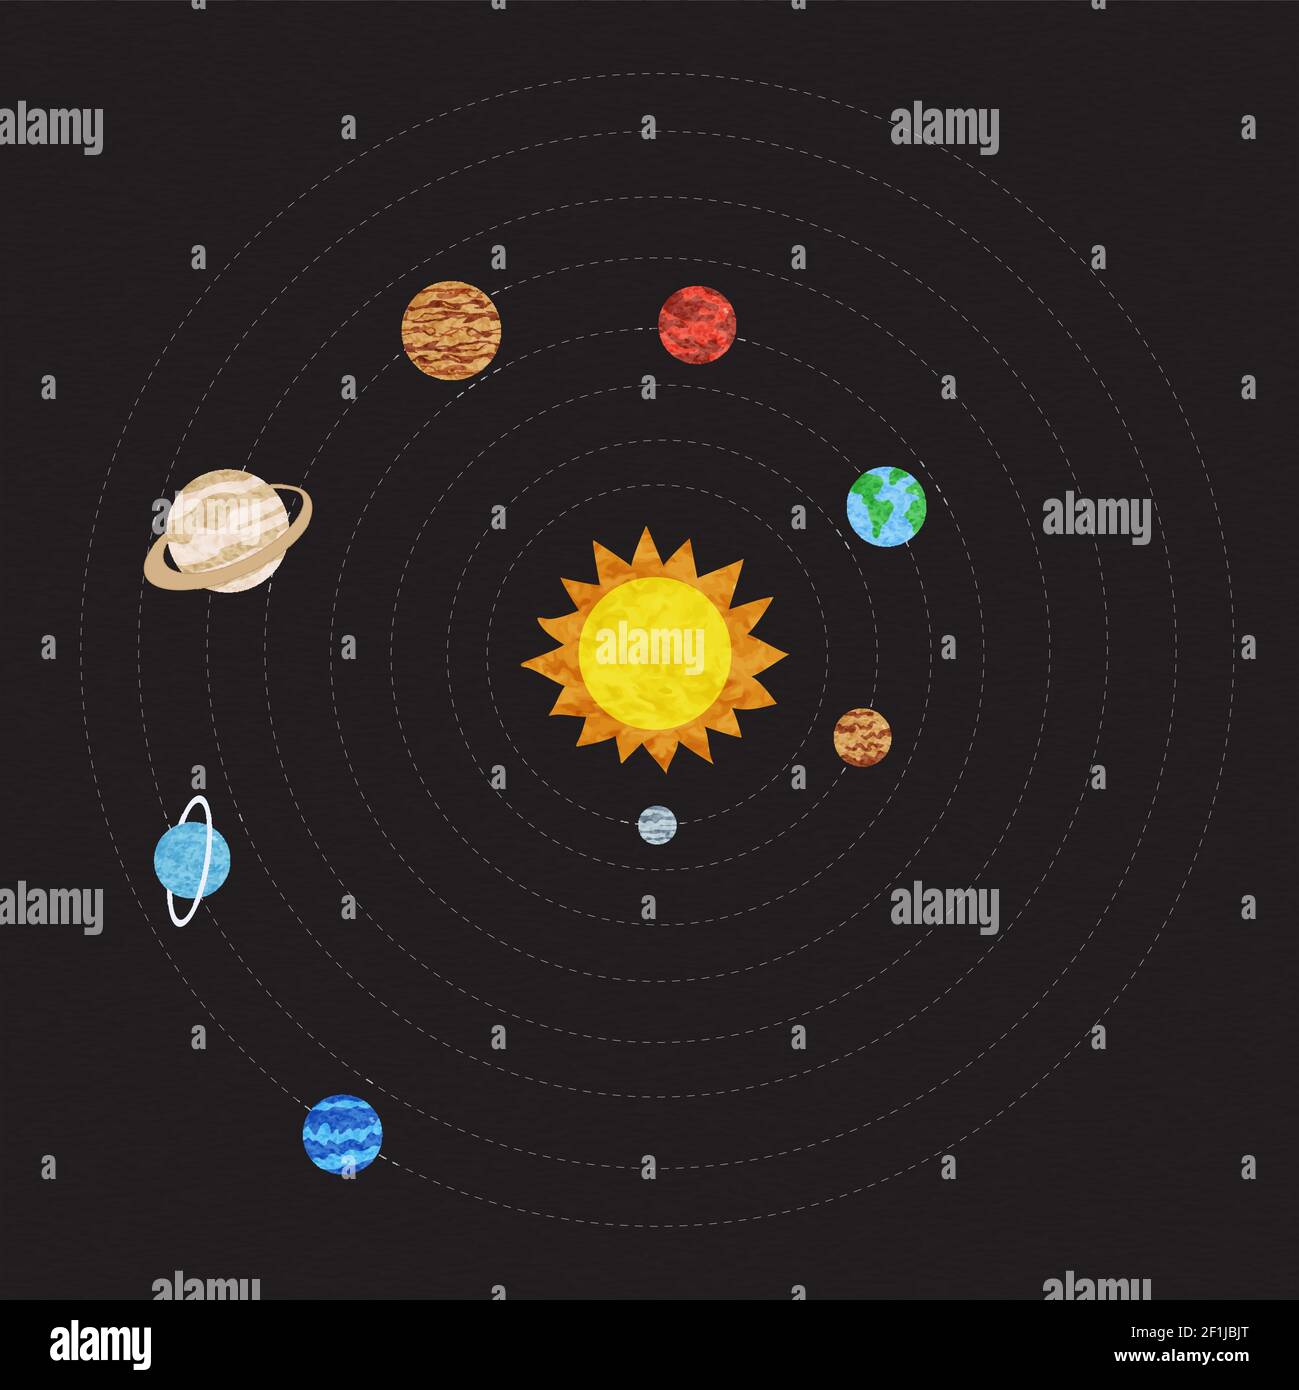 Sonnensystem Illustration des Weltraum-Planeten Orbit Führer für Astronomie Ausbildung oder Galaxie Exploration Konzept. Stock Vektor